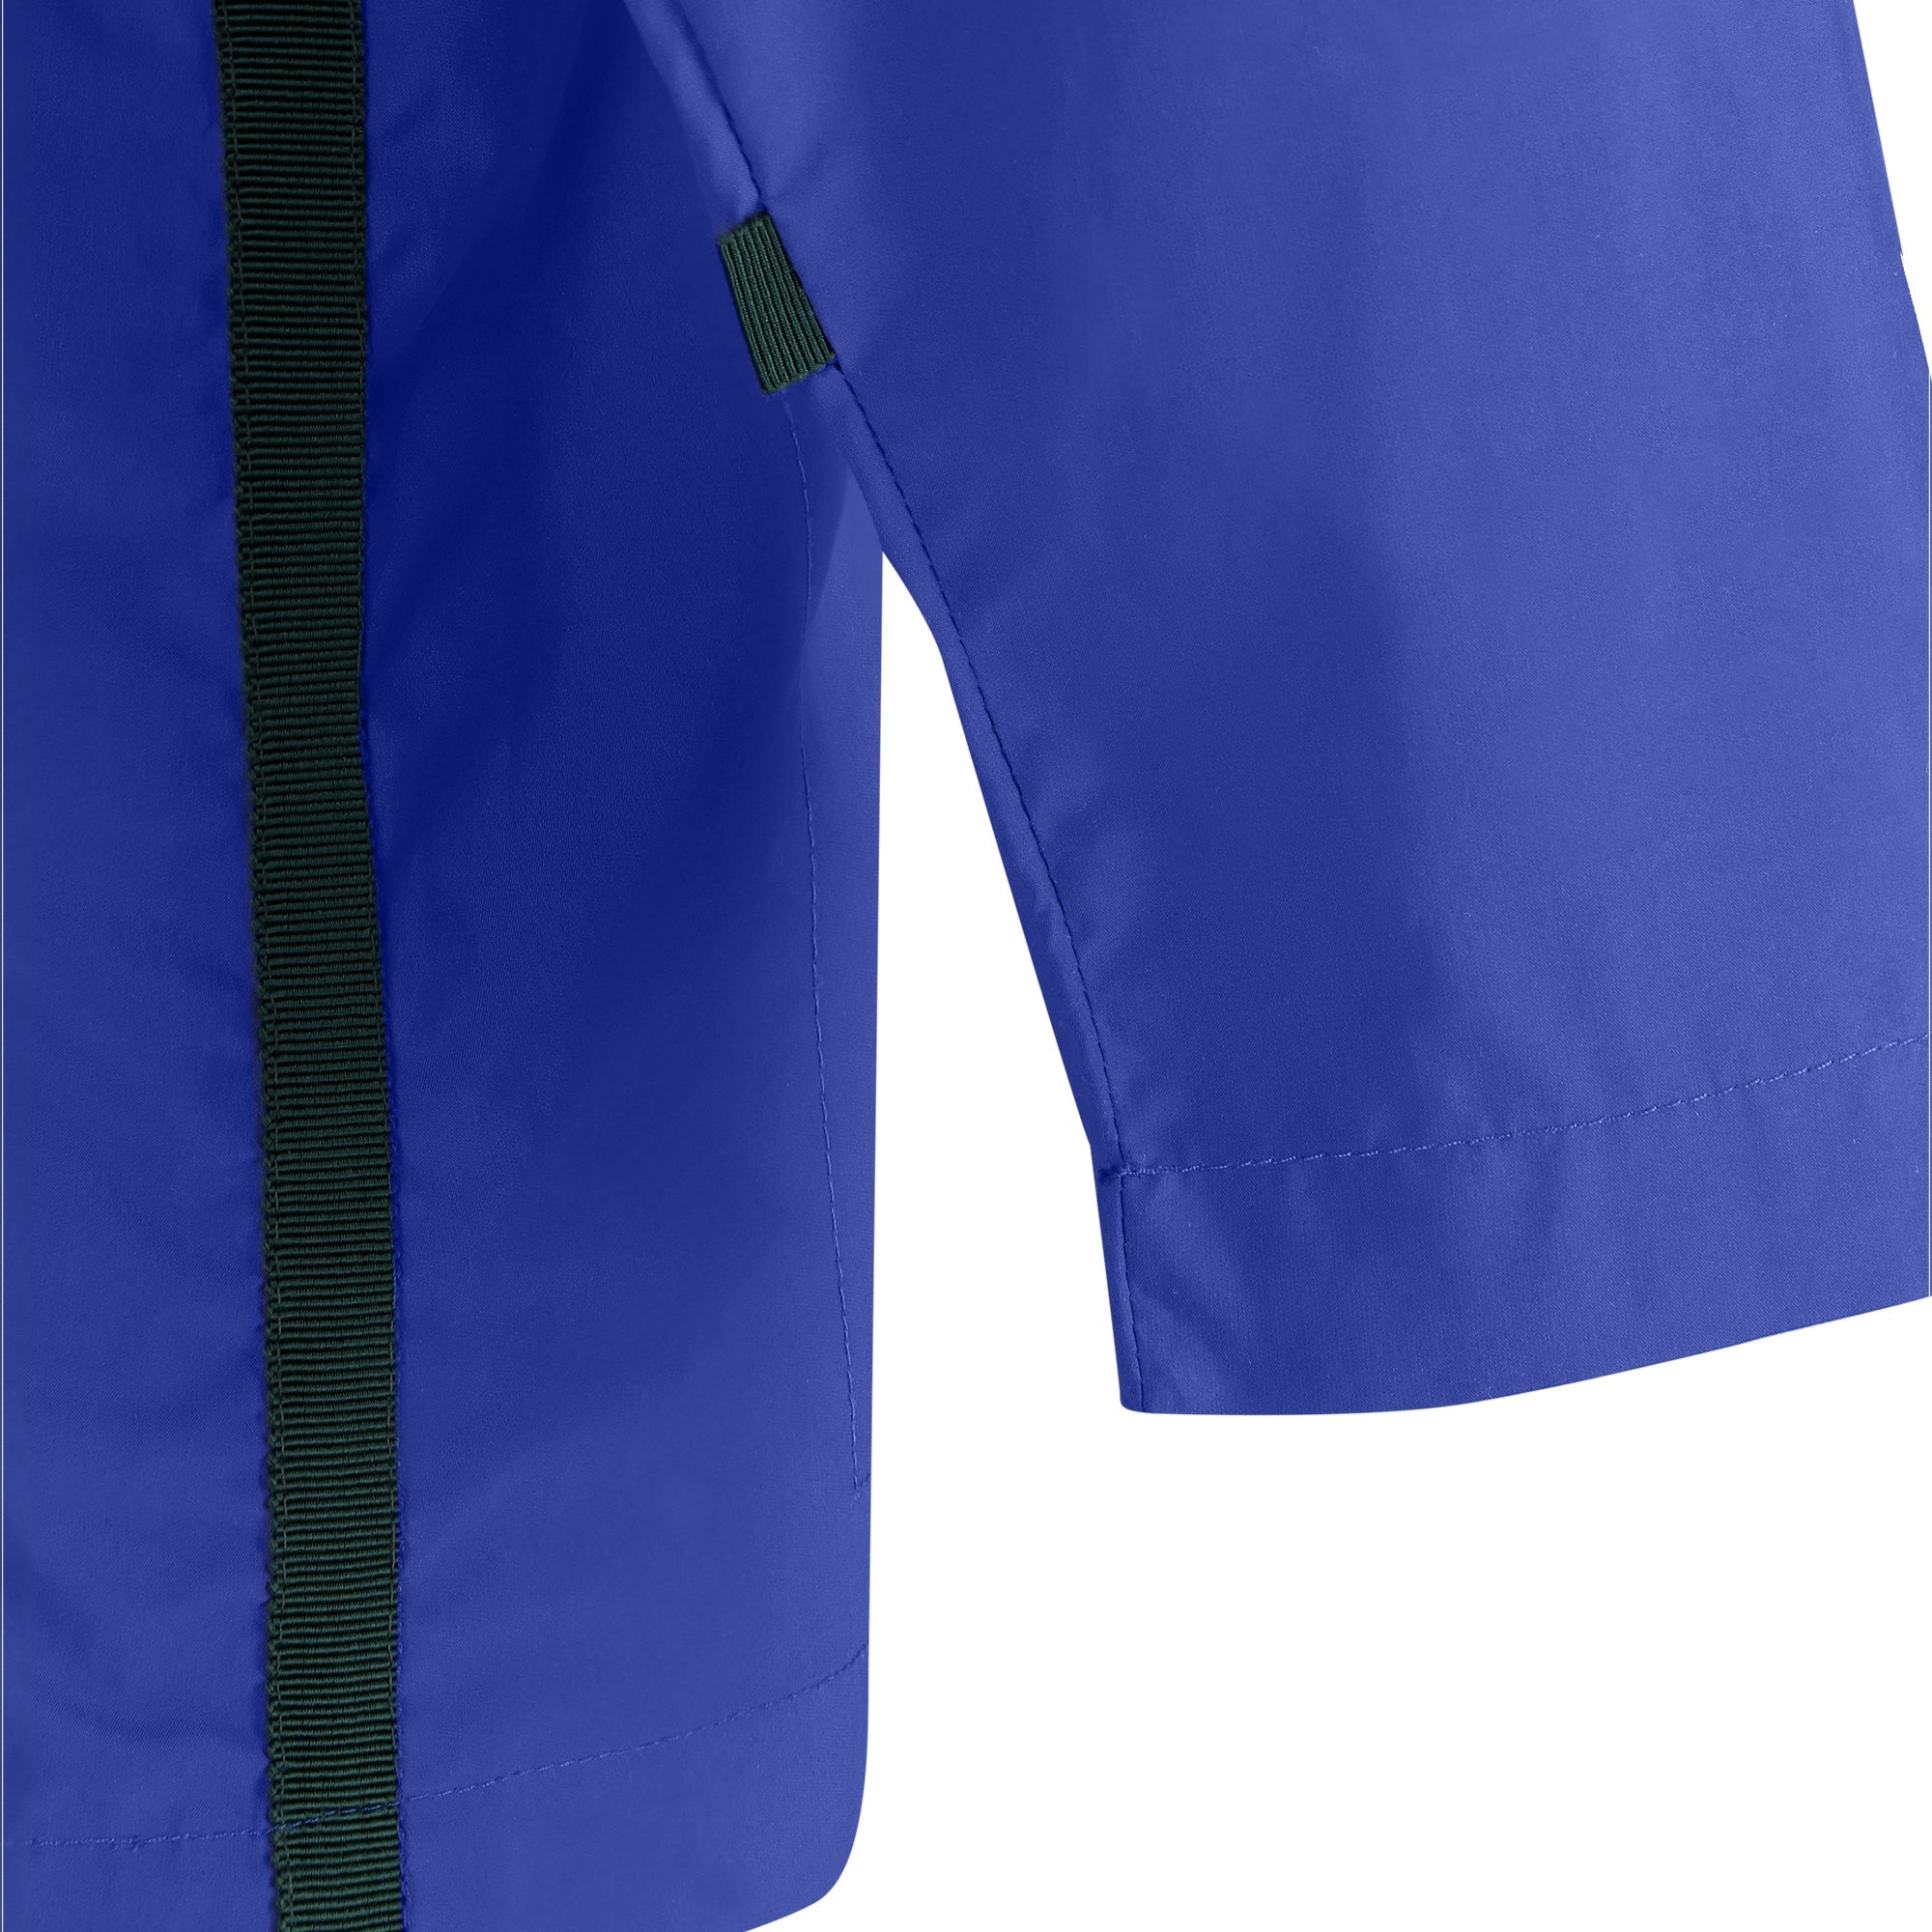 Bise raincoat - Royal Blue color - sleeve detail